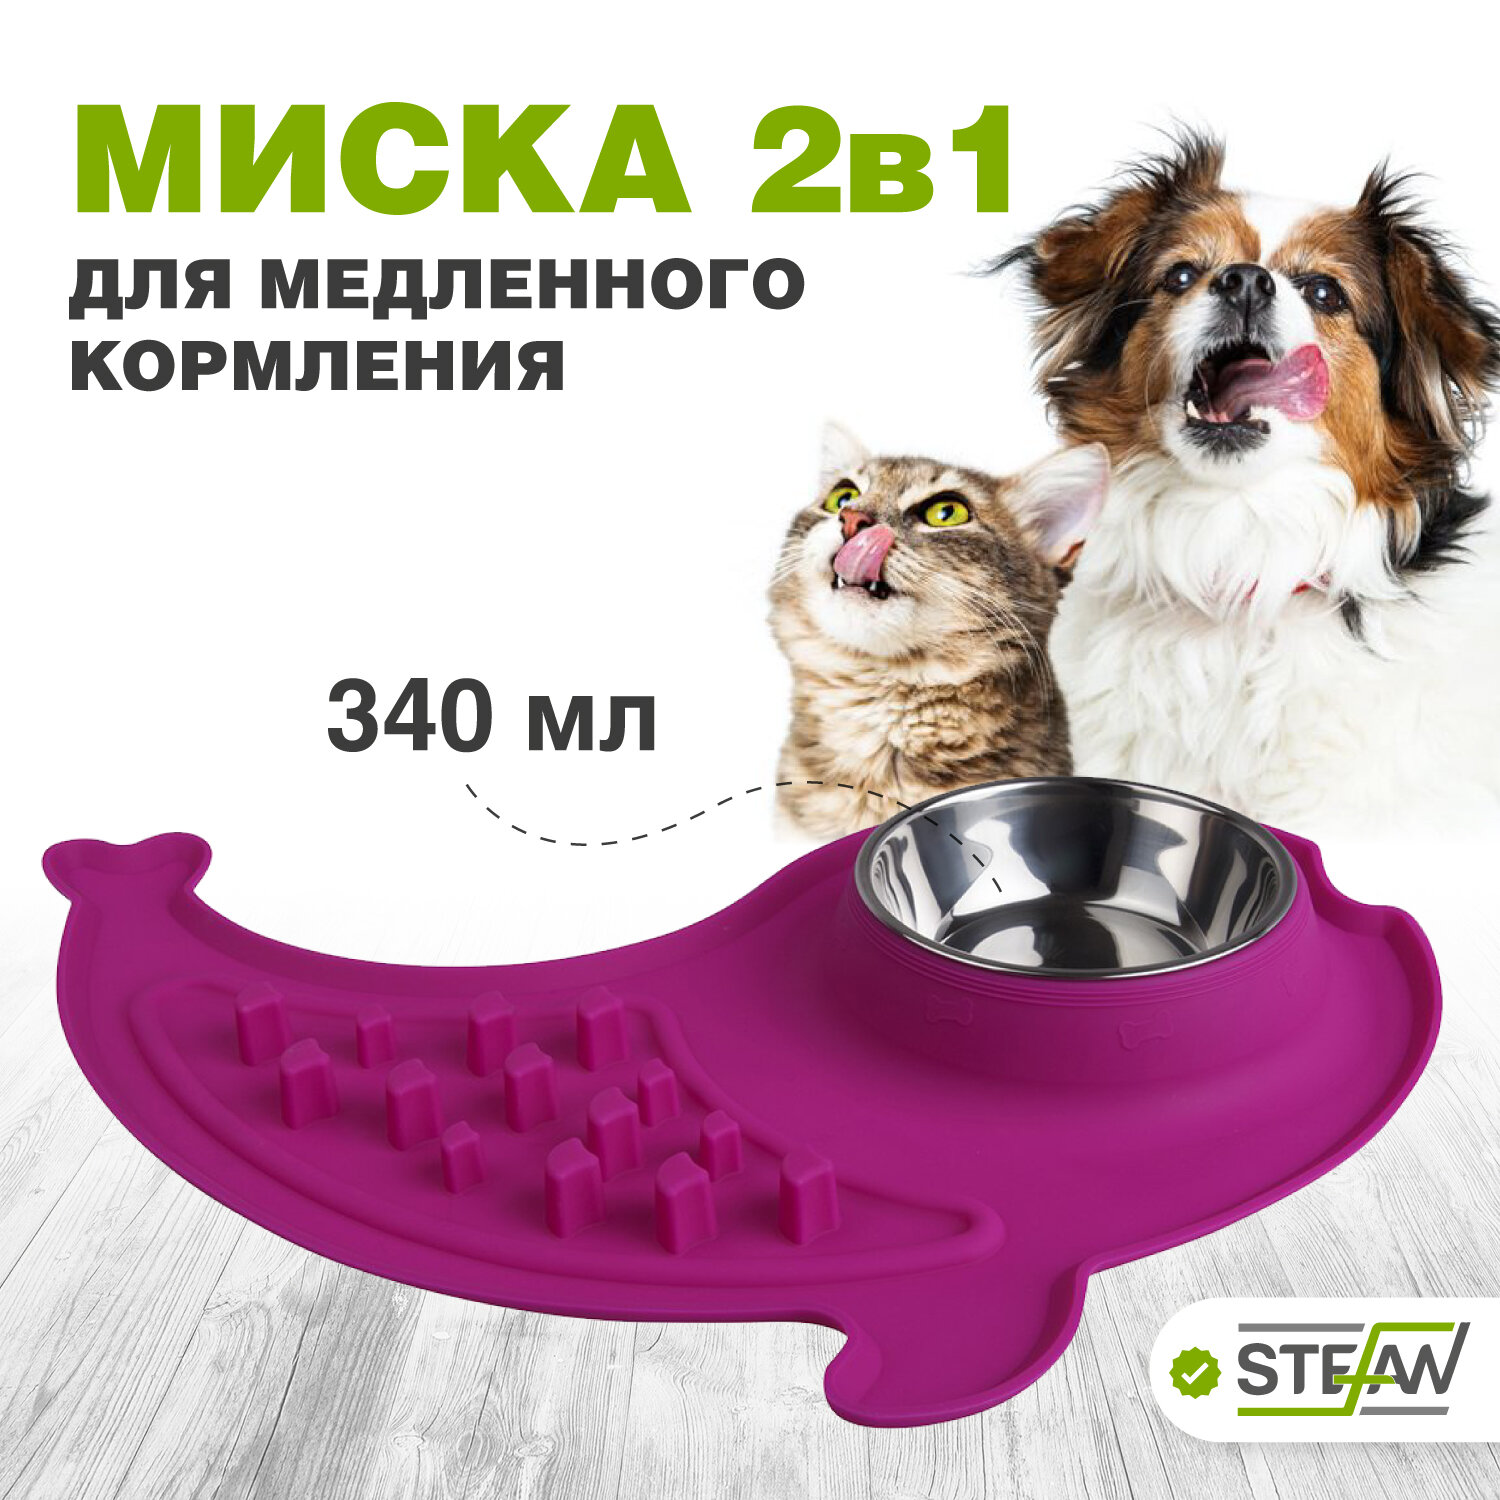 Миска для собак с интерактивной зоной STEFAN (Штефан), размер M, 1х340мл, пурпурная, WF12411